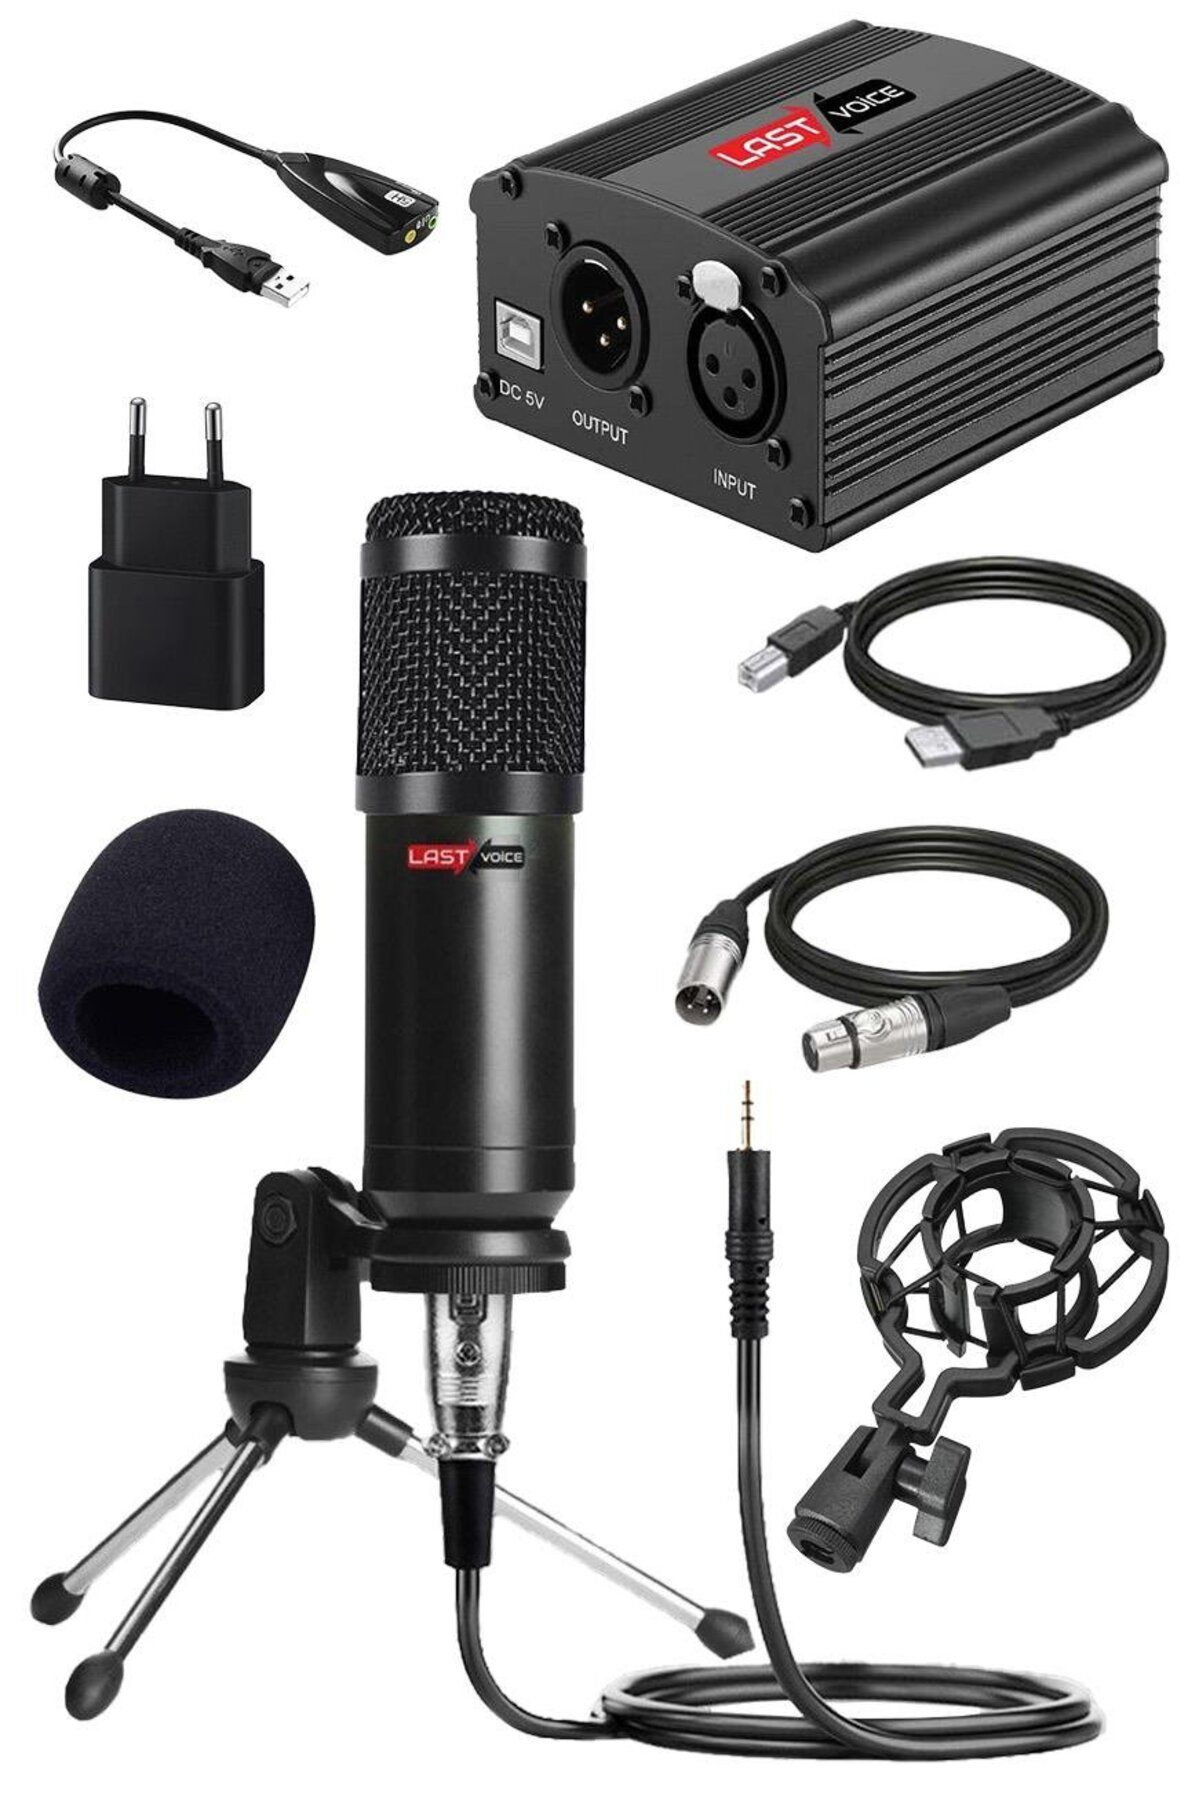 Lastvoice Bm800 Full Black Mikrofon Phantom Power Mini Tripod 7.1